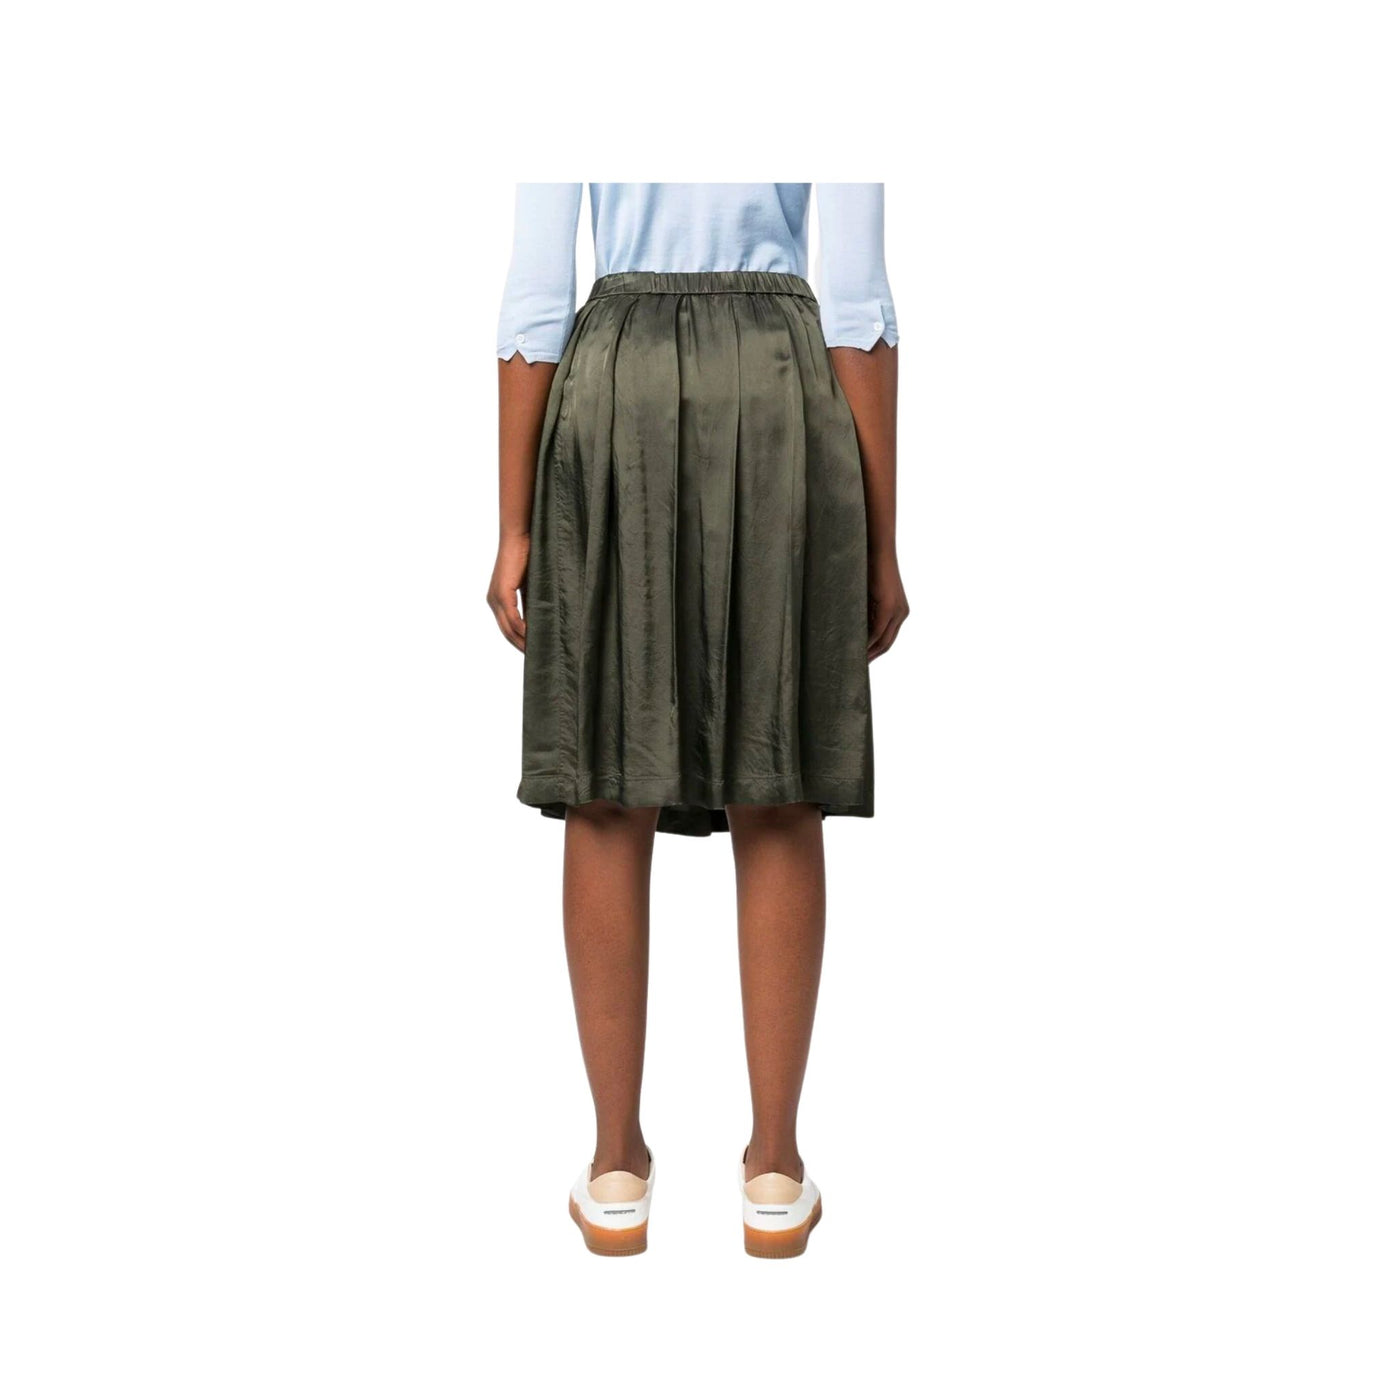 Women's satin skirt